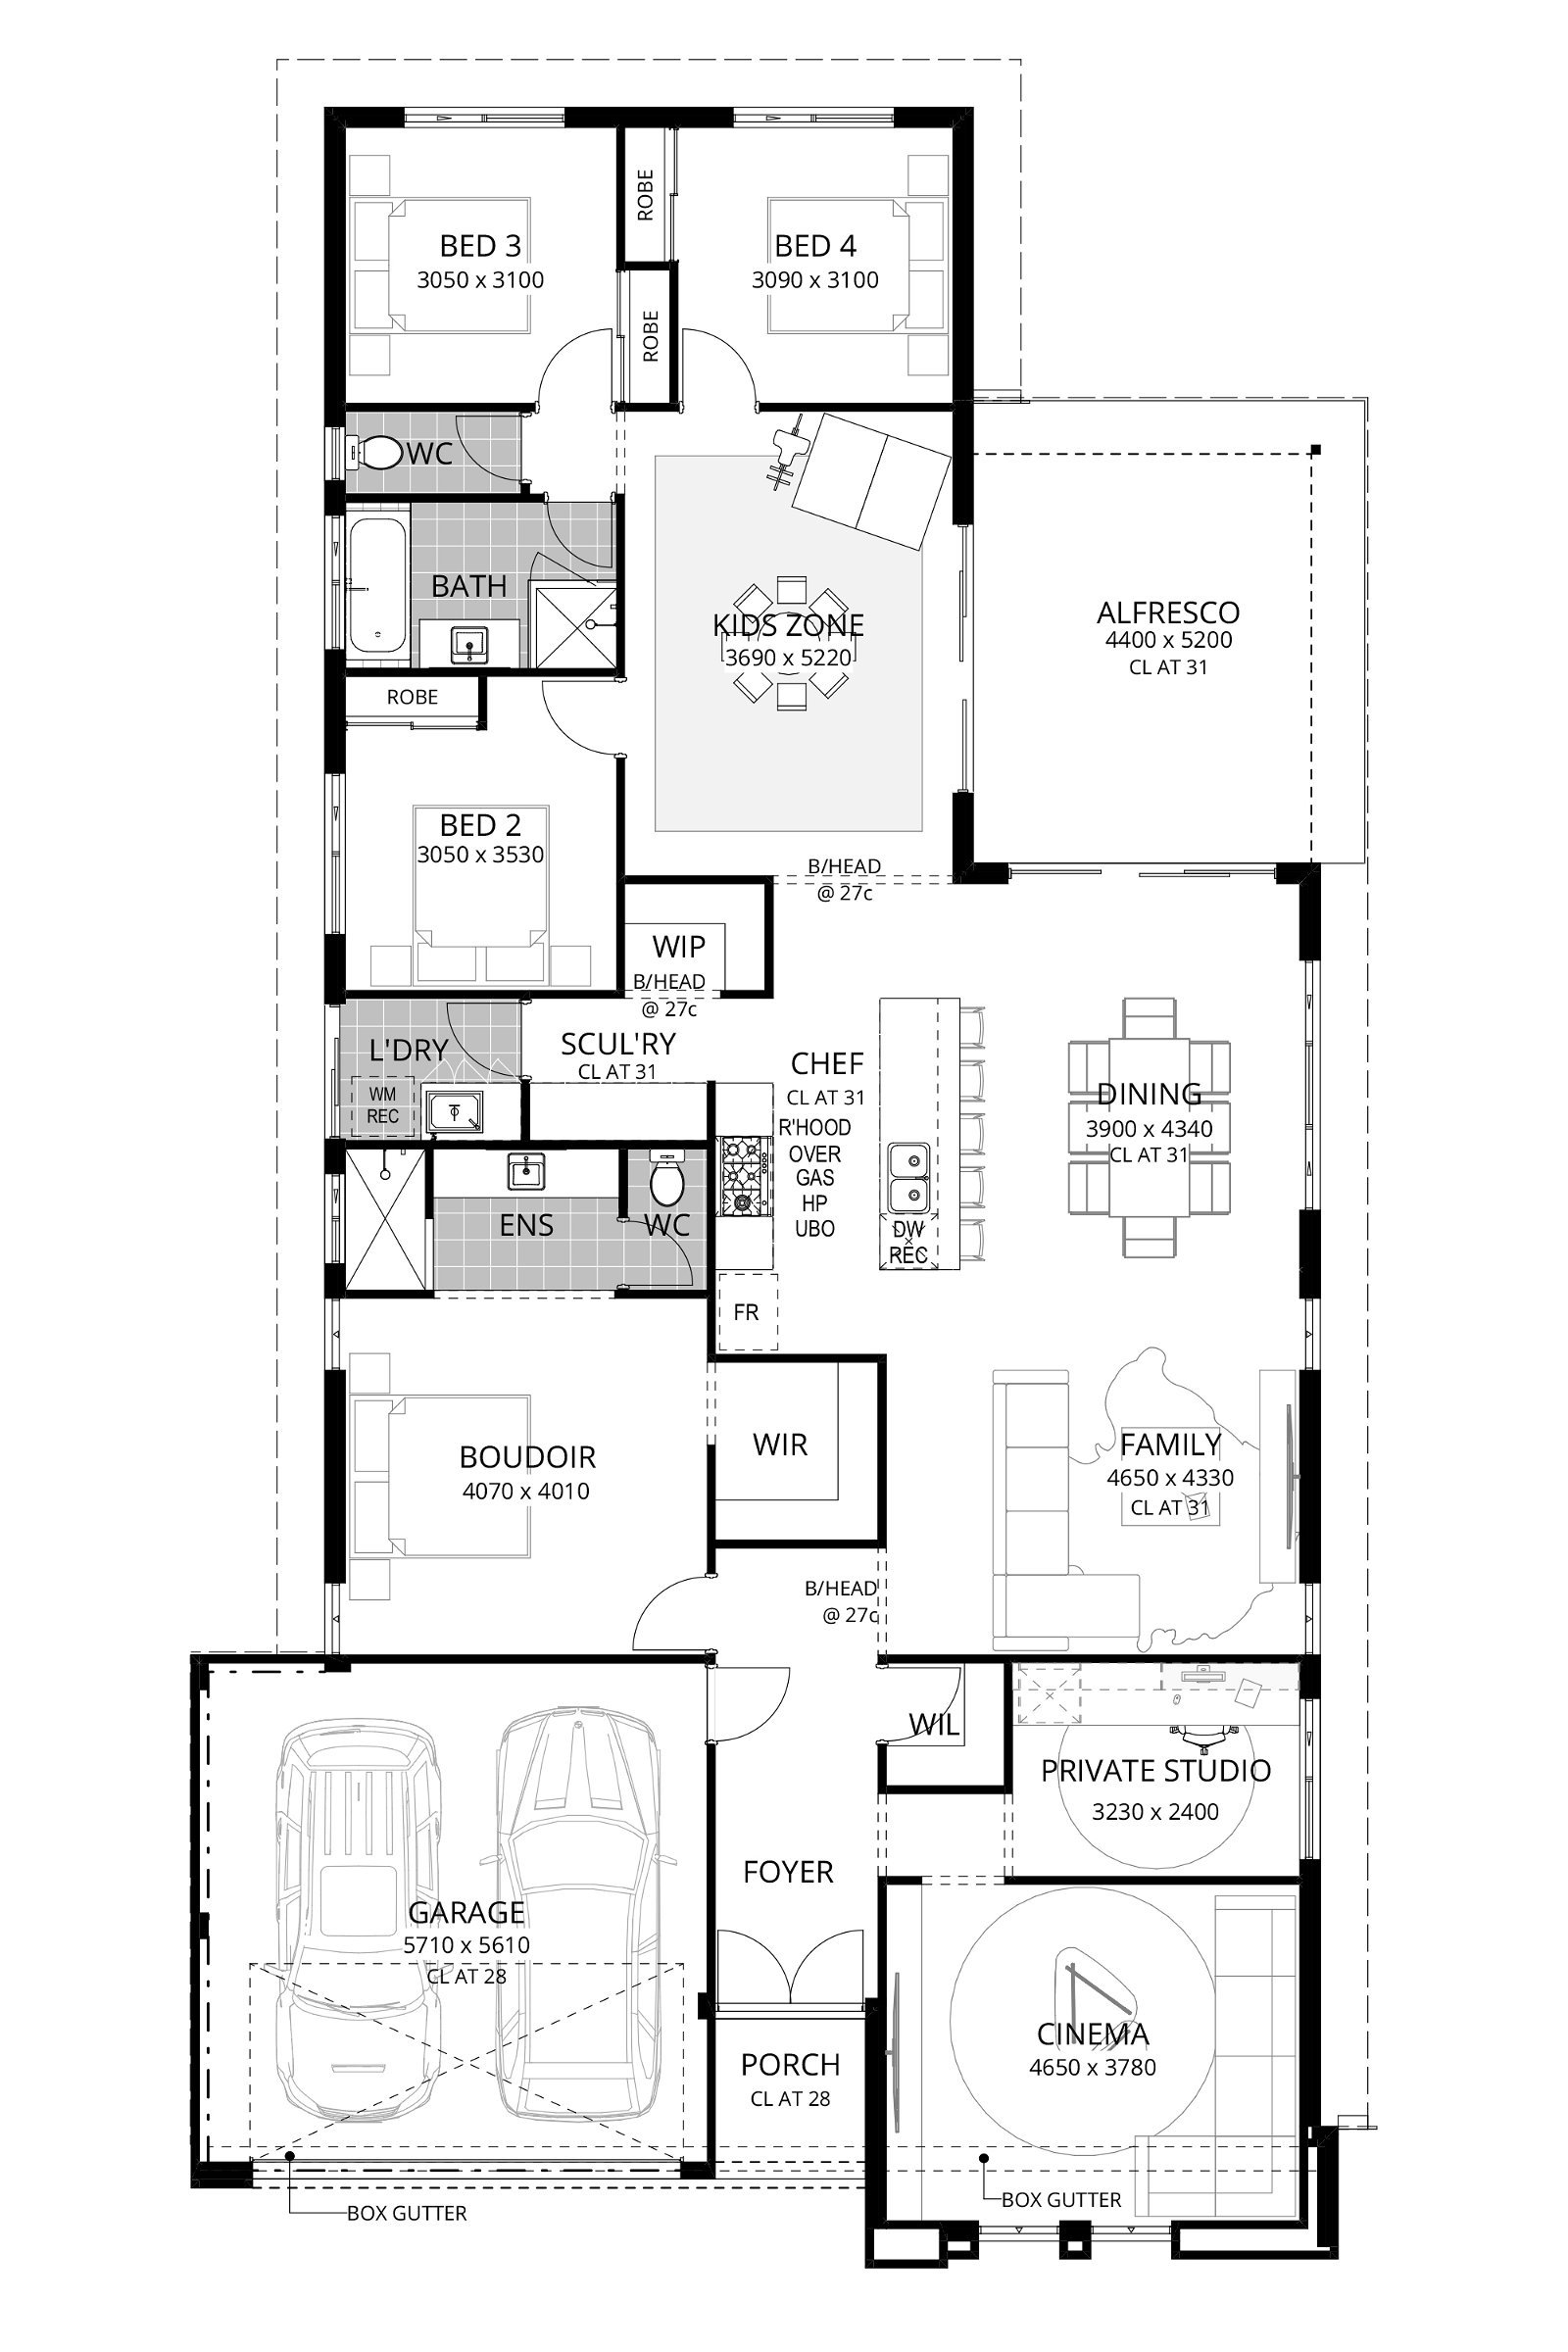 Residential Attitudes - Opulent Eden - Floorplan - Website Floorplans Oplulent Eden